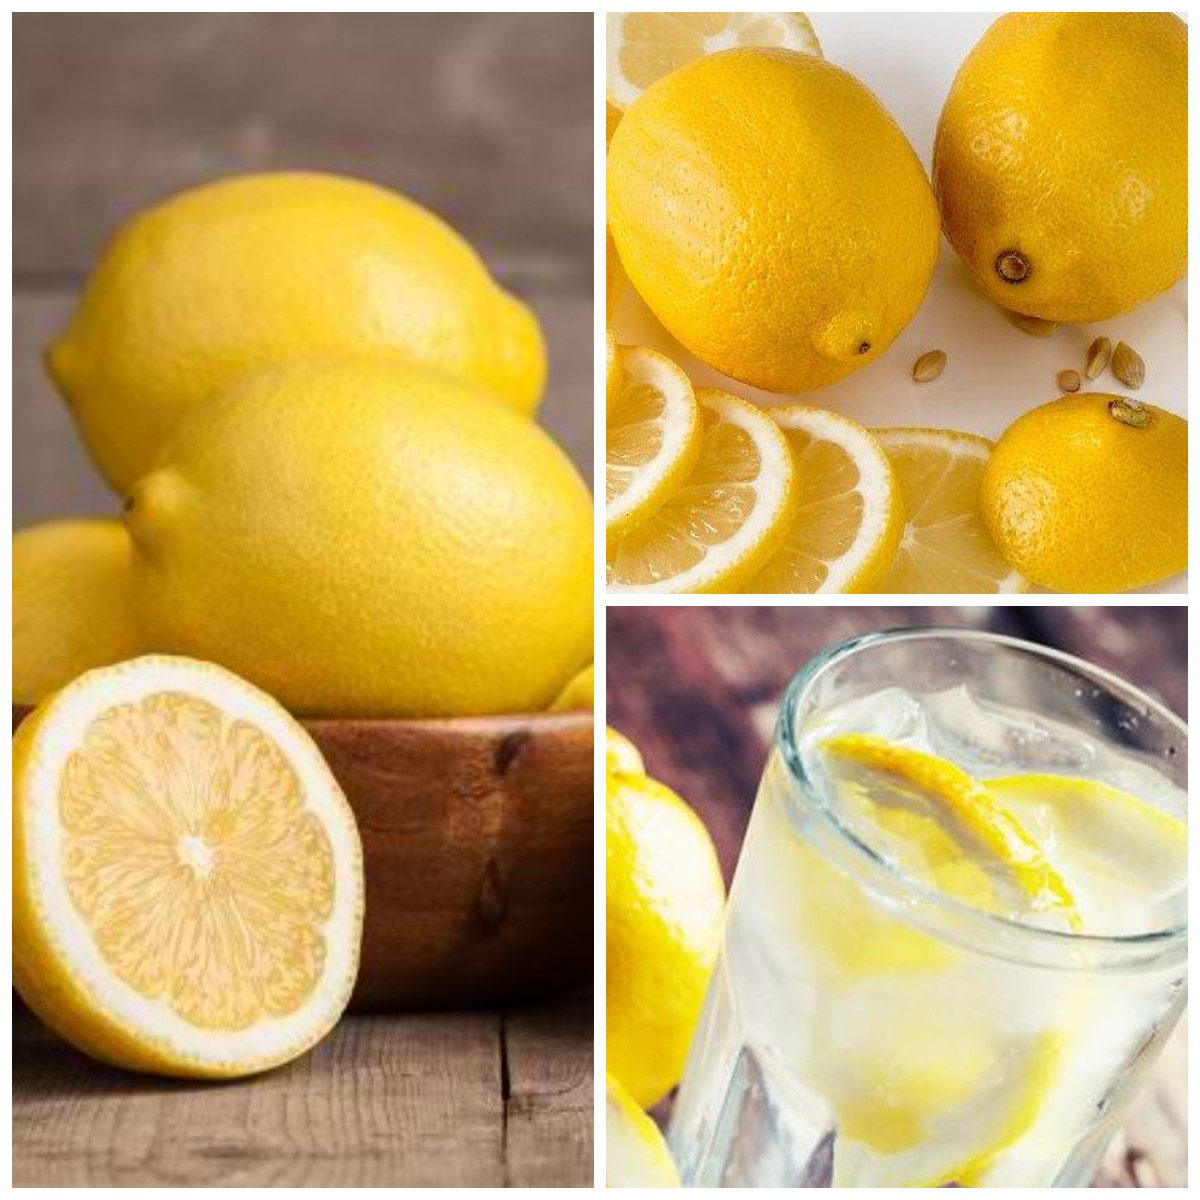 Jika Kalian Miliki Penyakit Jantung, Coba Manfaatkan Buah Lemon yang Kaya Akan Khasiat!